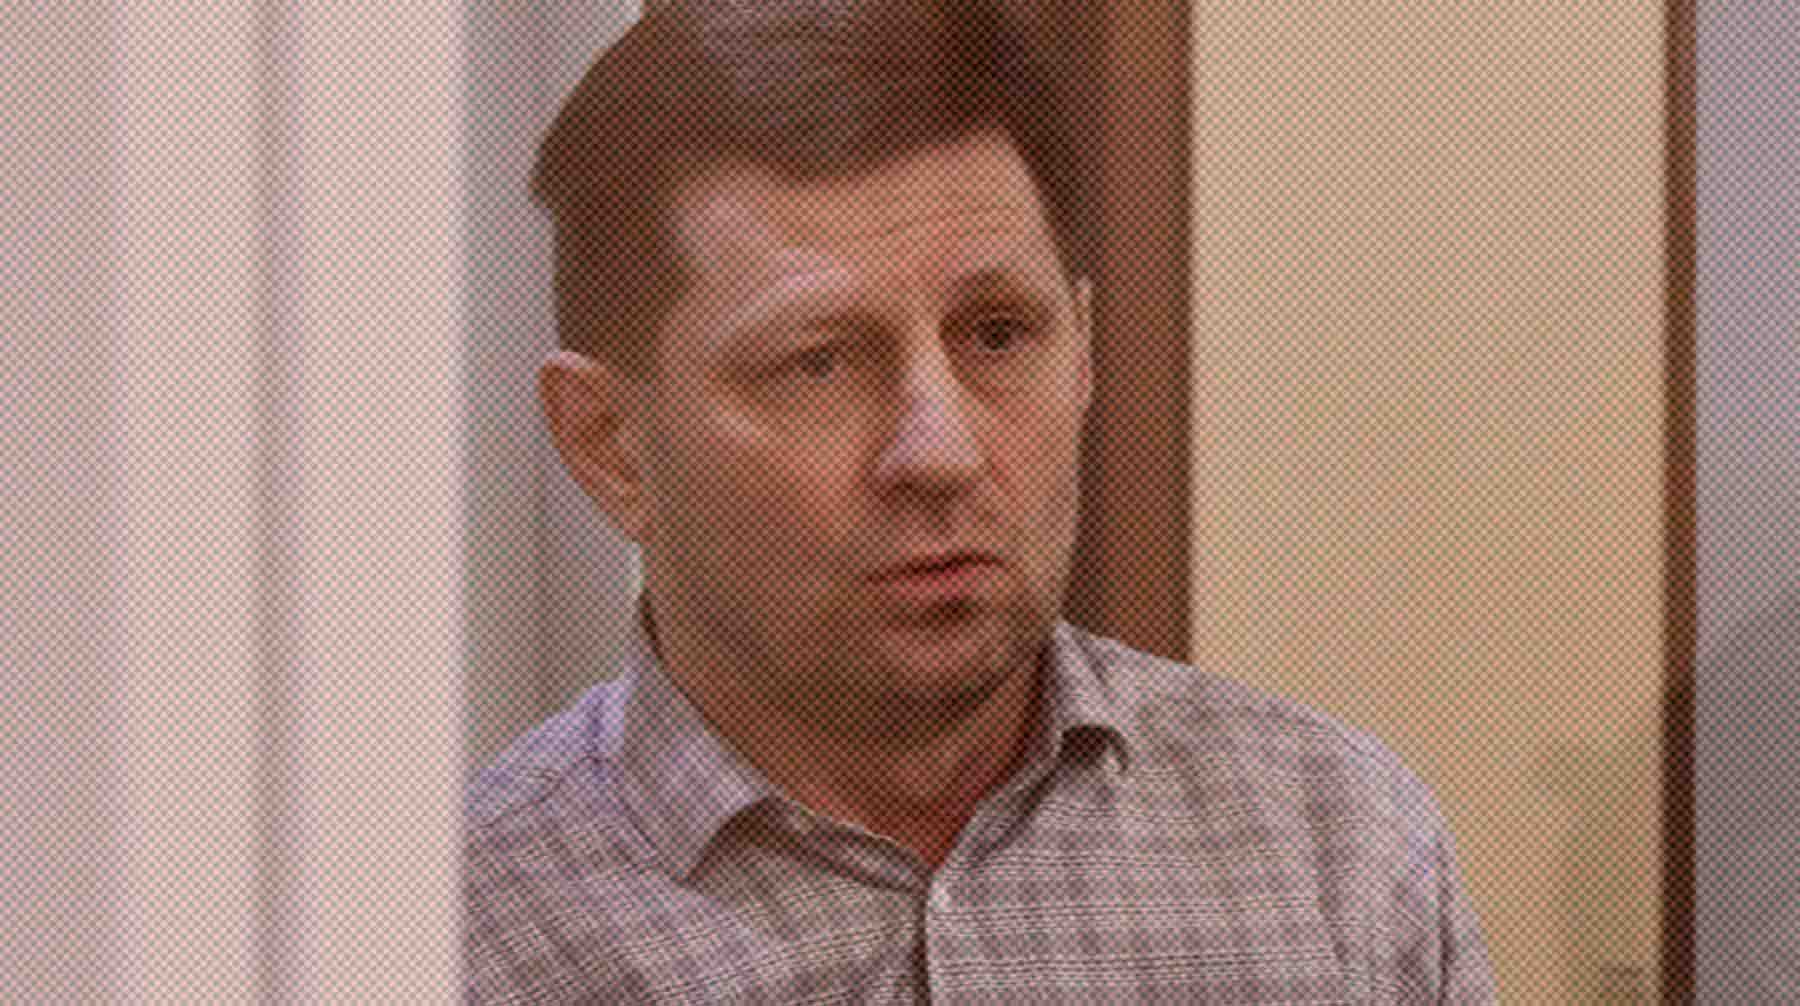 Несколько дней назад присяжные признали Фургала виновным, он эмоционально отреагировал на решение Сергей Фургал